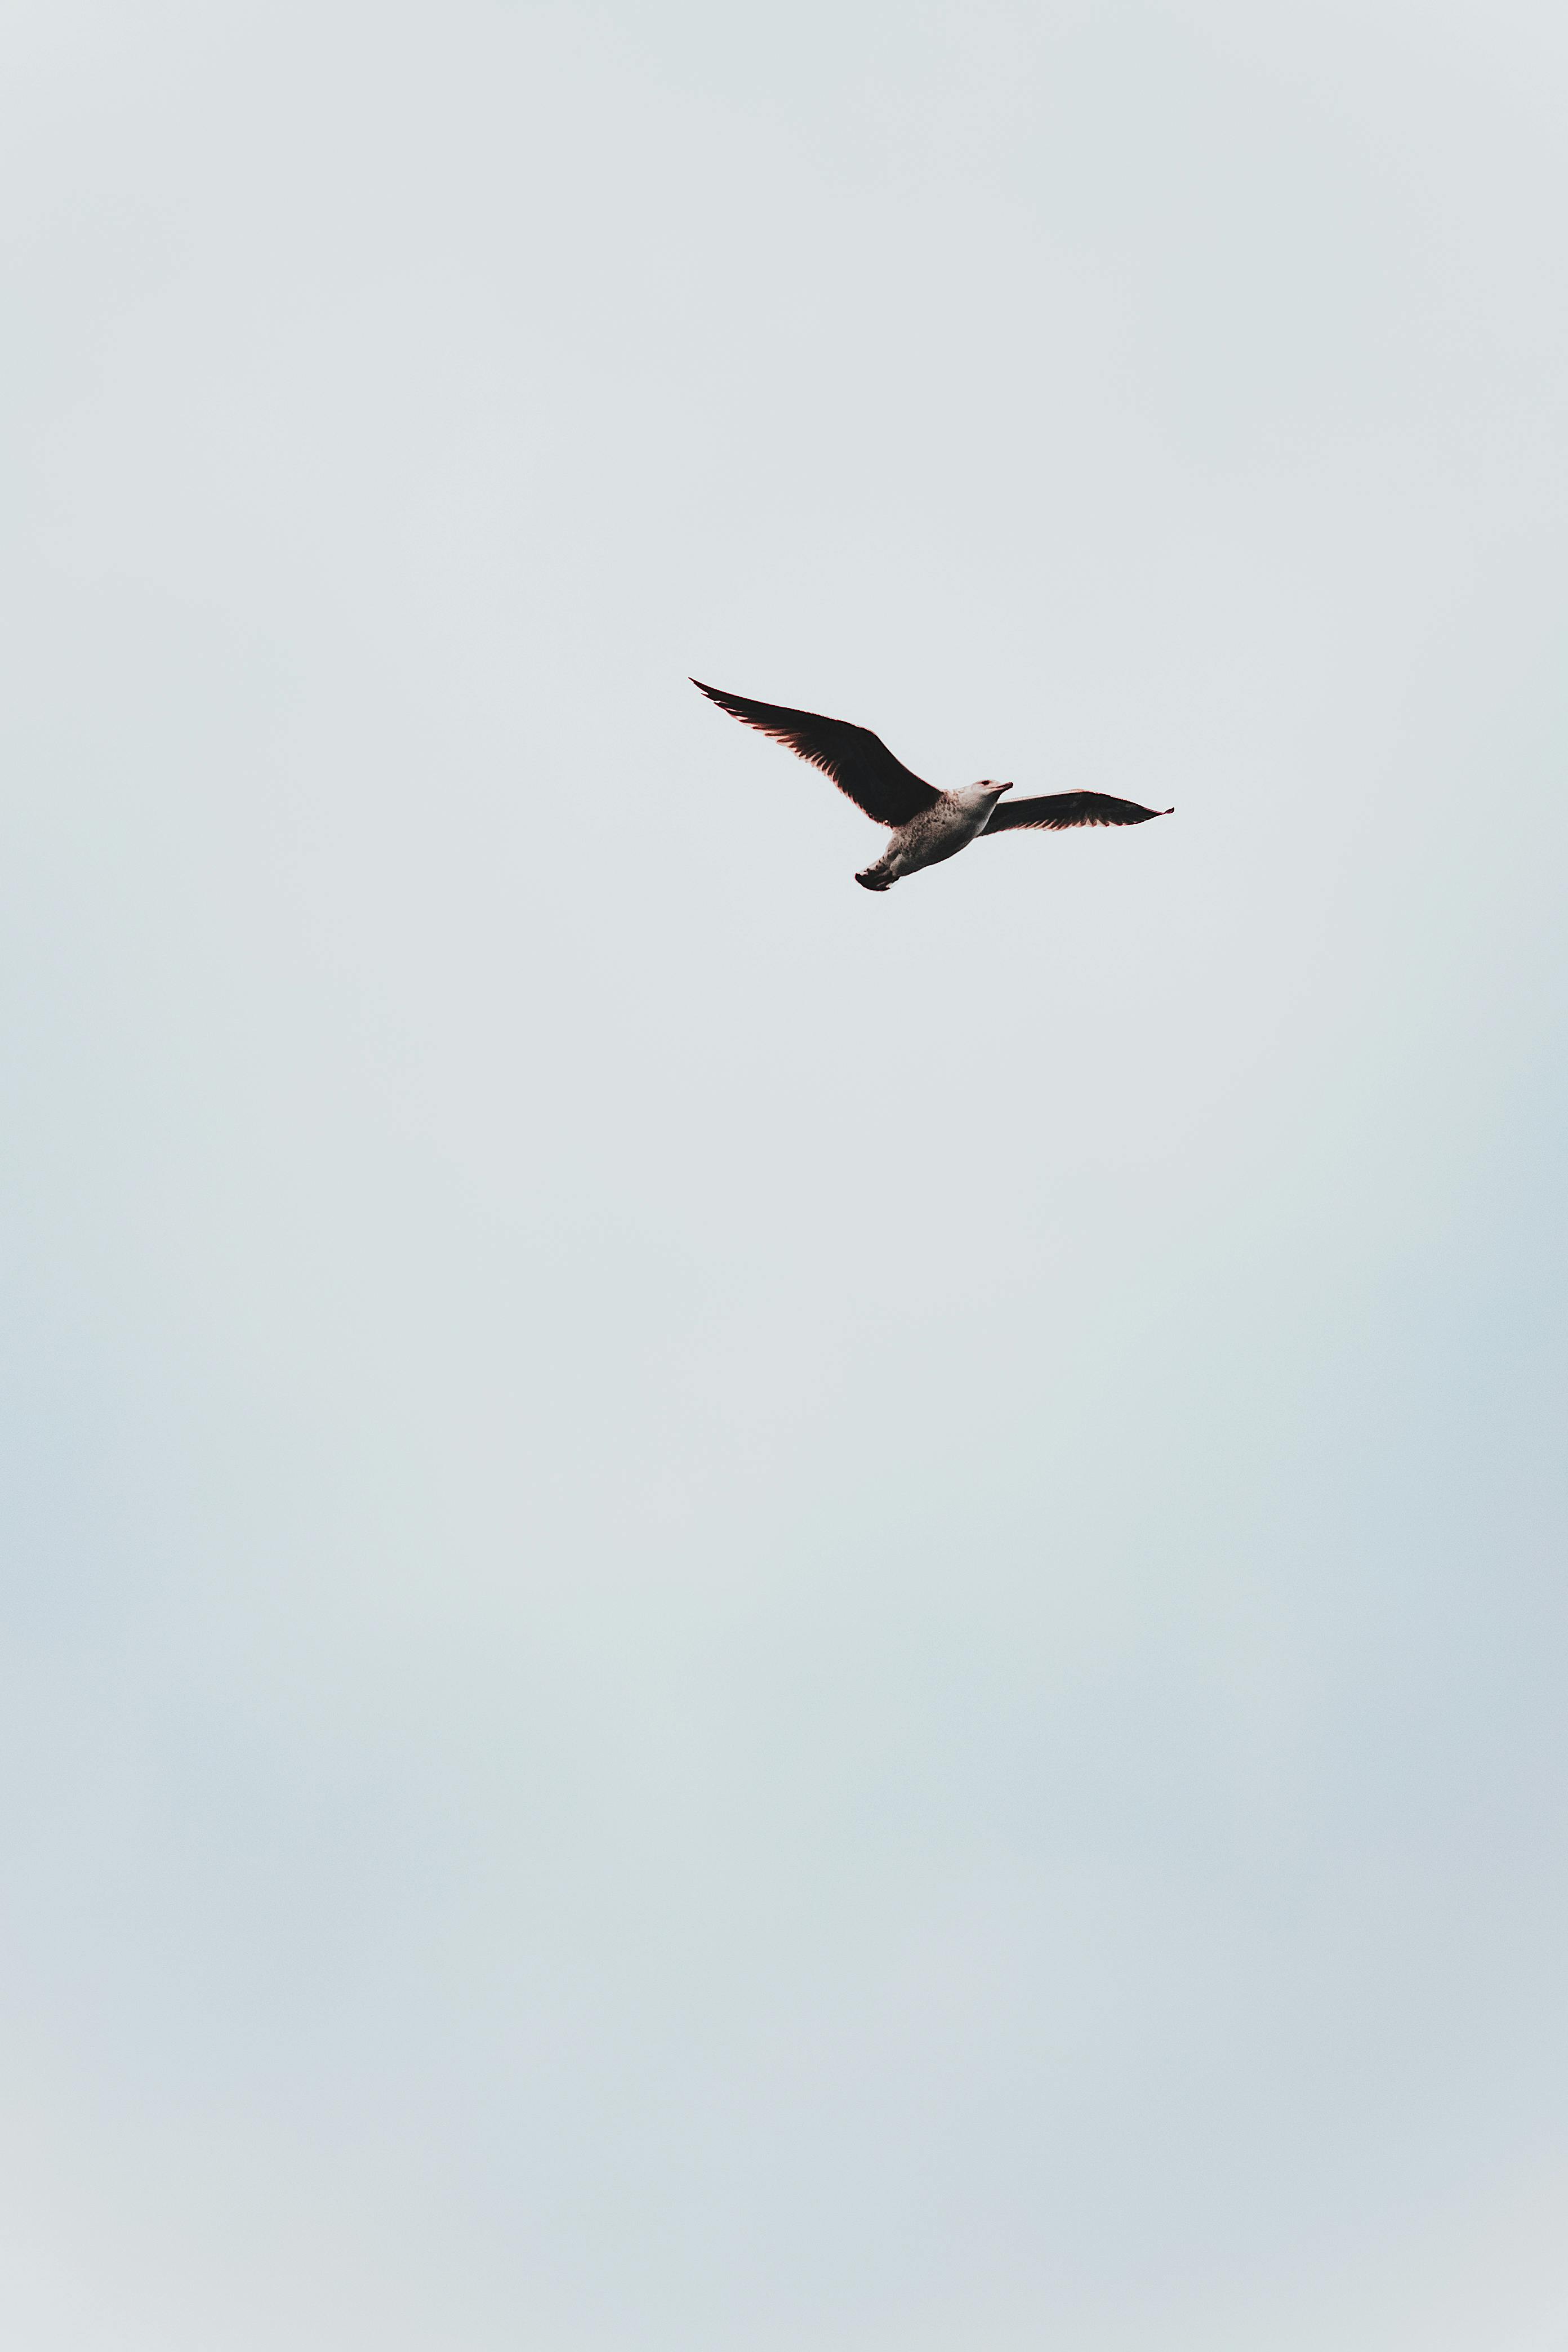 Hawk flying in clear sky in sunlight · Free Stock Photo